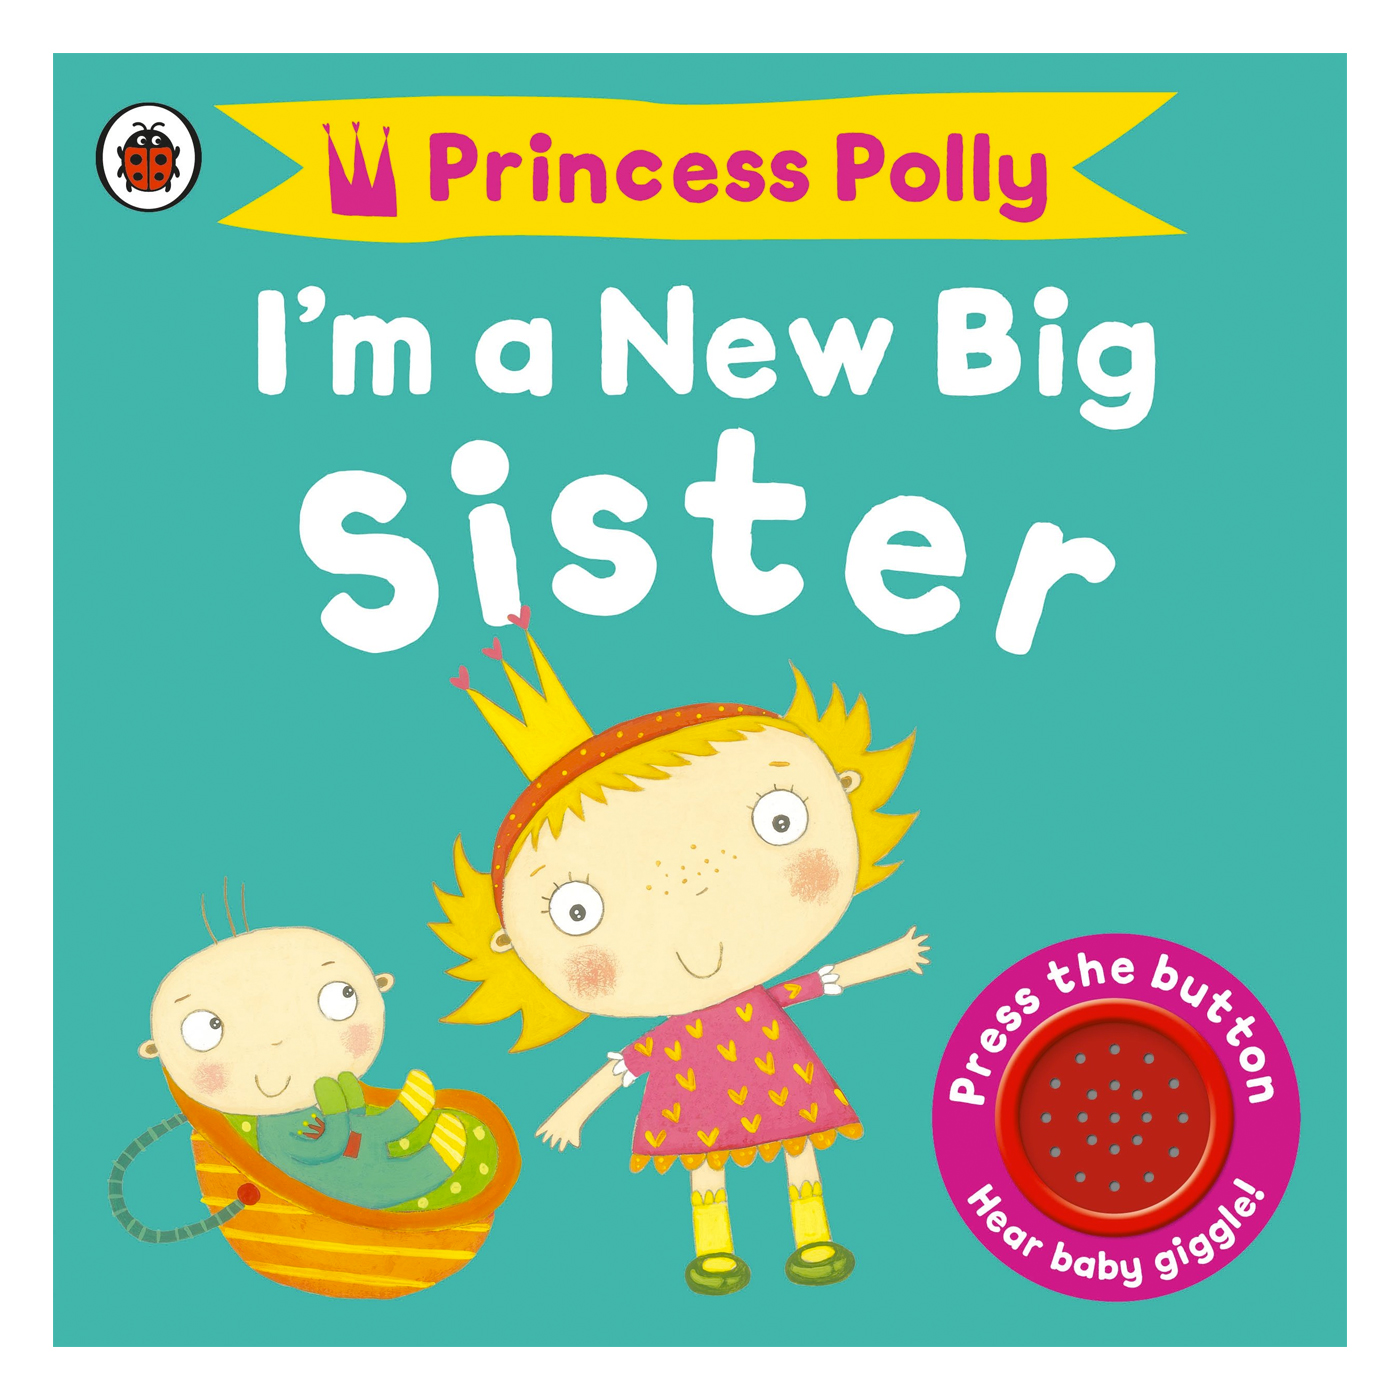  I'm a New Big Sister: A Princess Polly book